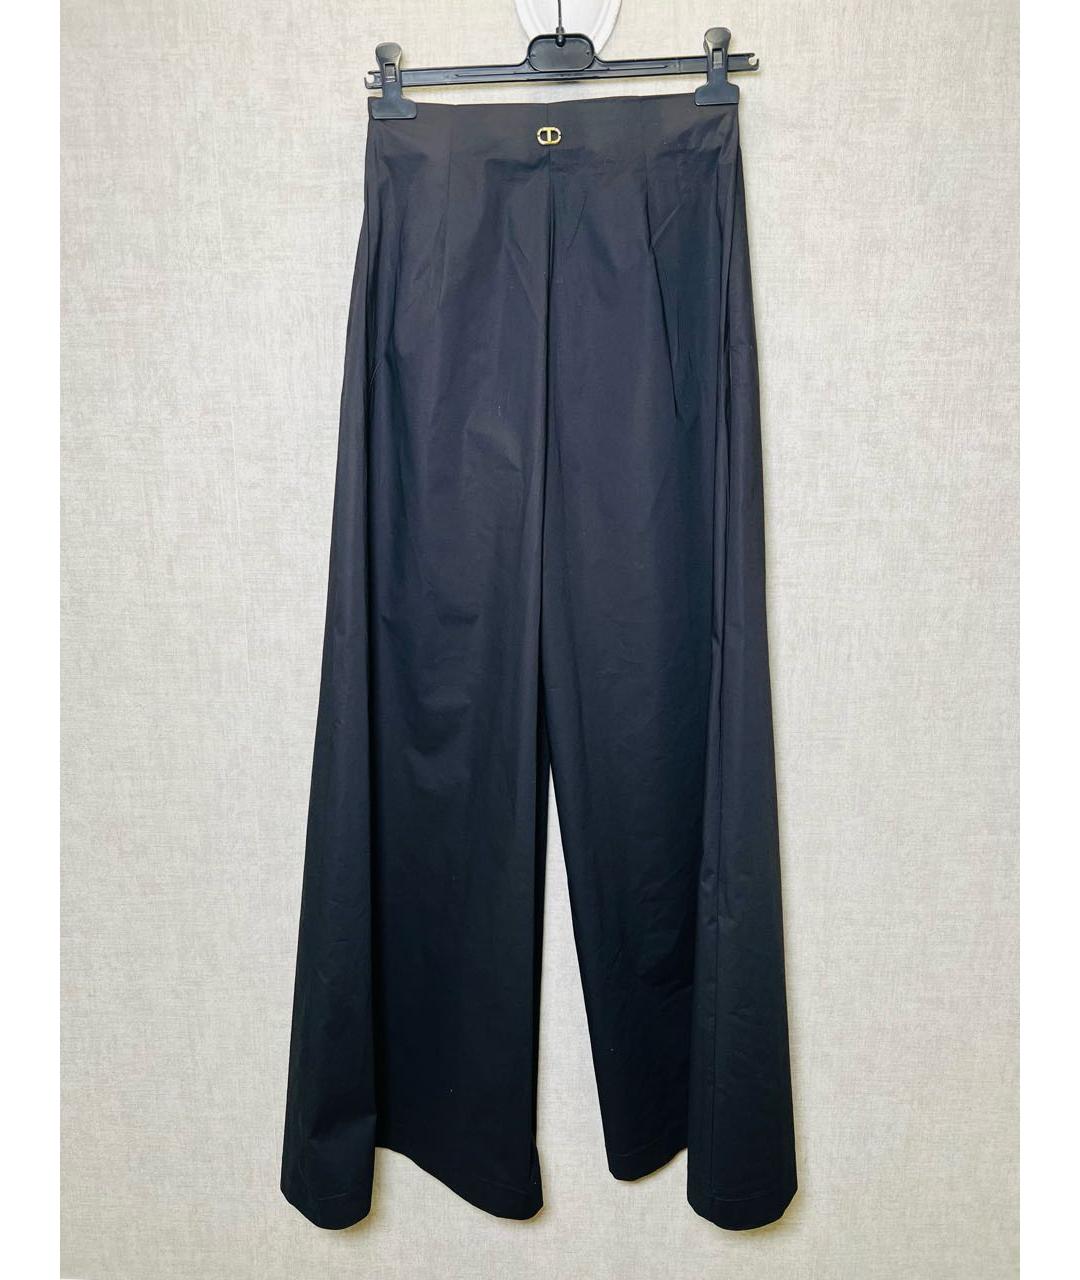 TWIN-SET Черные хлопковые брюки широкие, фото 2